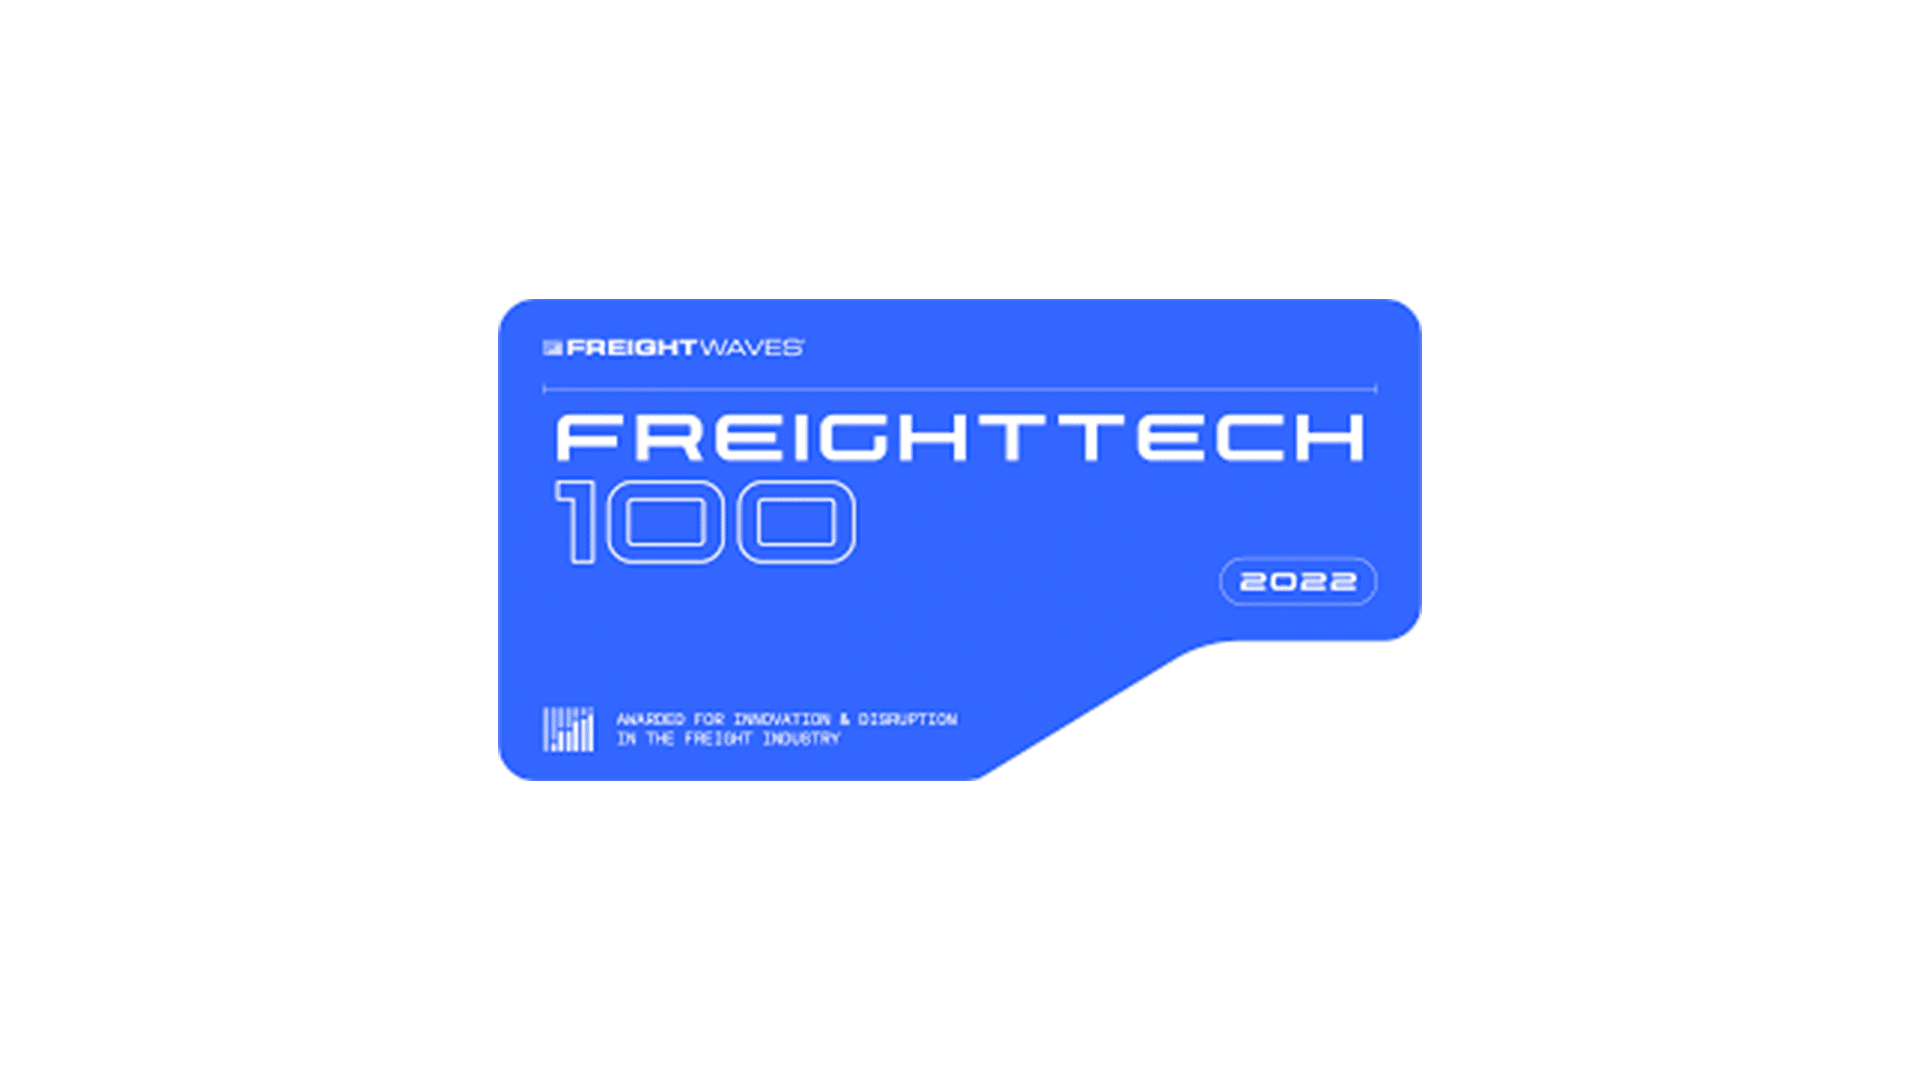 Transfix Named to FreightWaves’ 2022 FreightTech 100 List